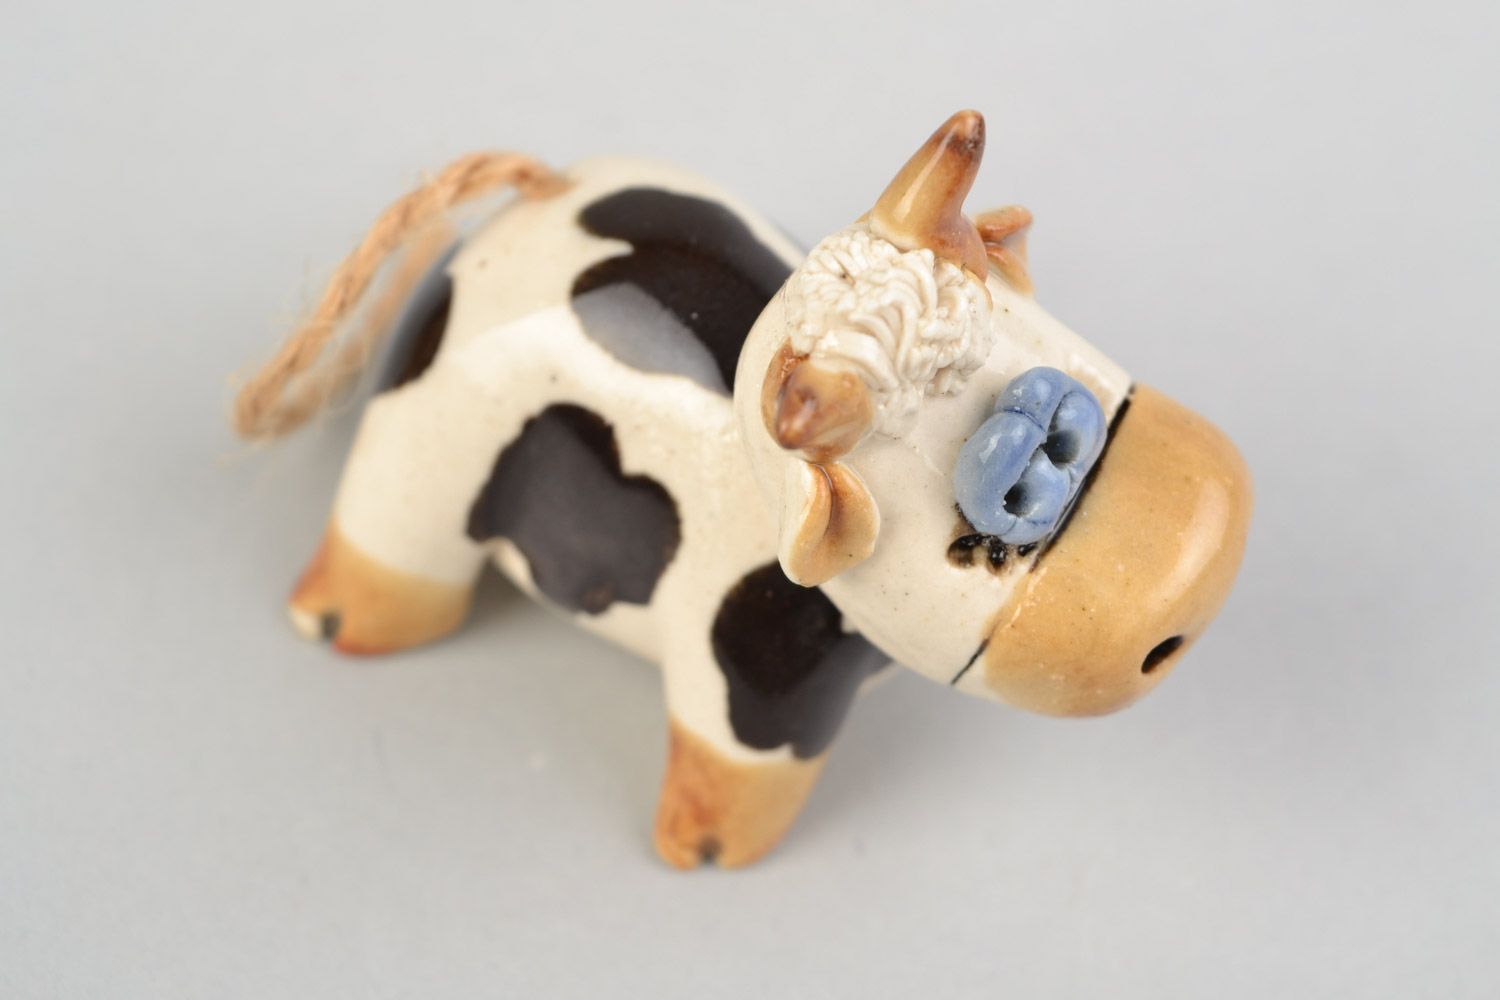 Забавная авторская расписанная глазурью глиняная фигурка коровки ручной работы фото 3